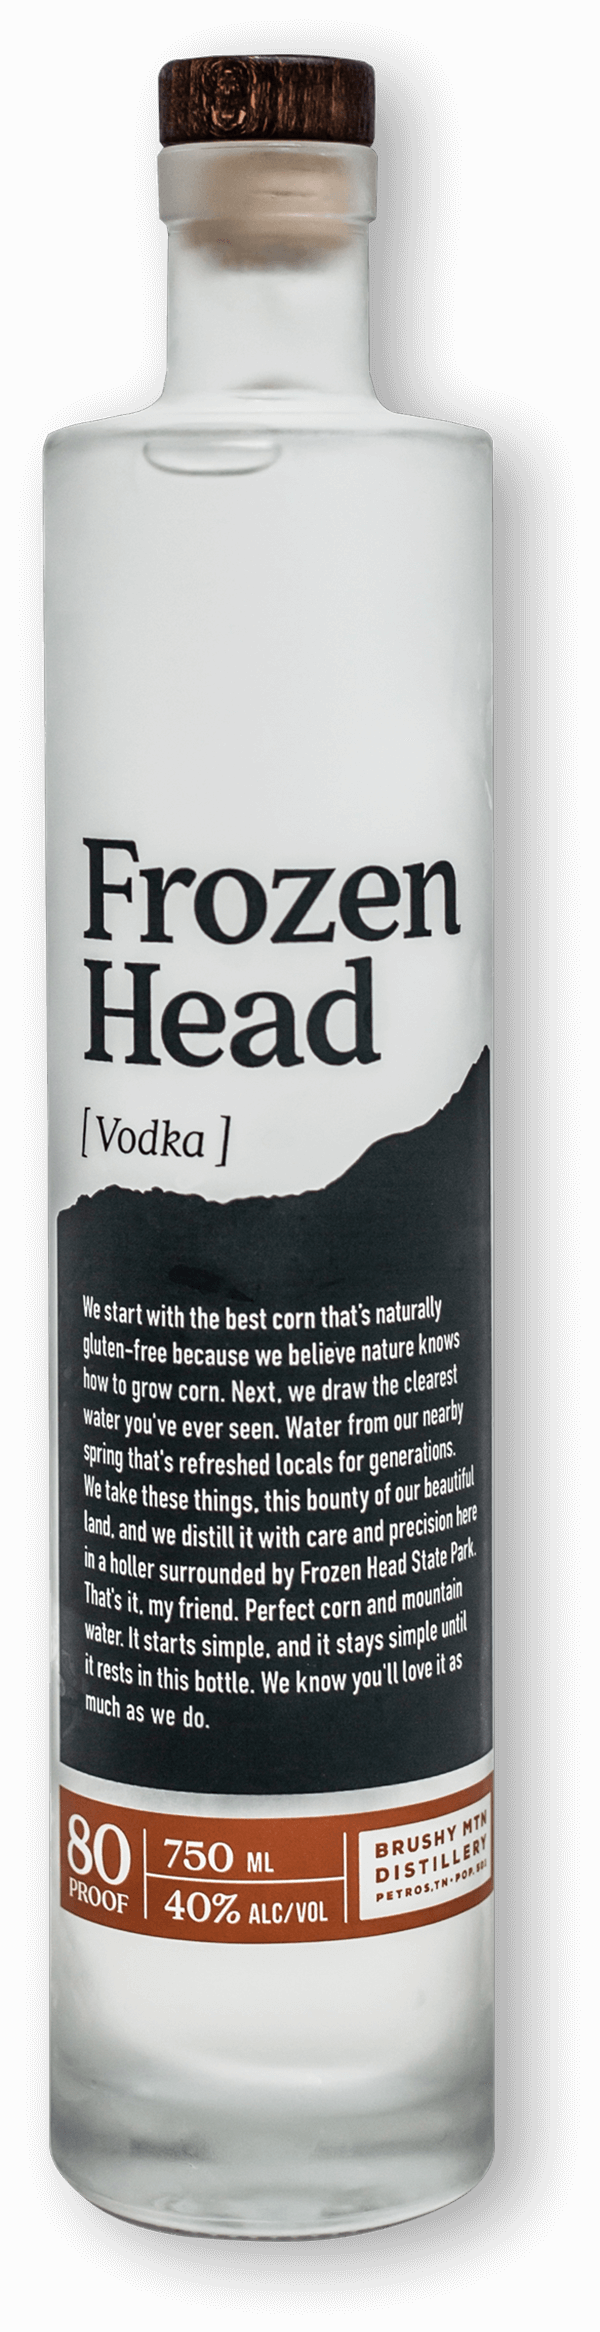 Frozen Head Vodka Bottle Image